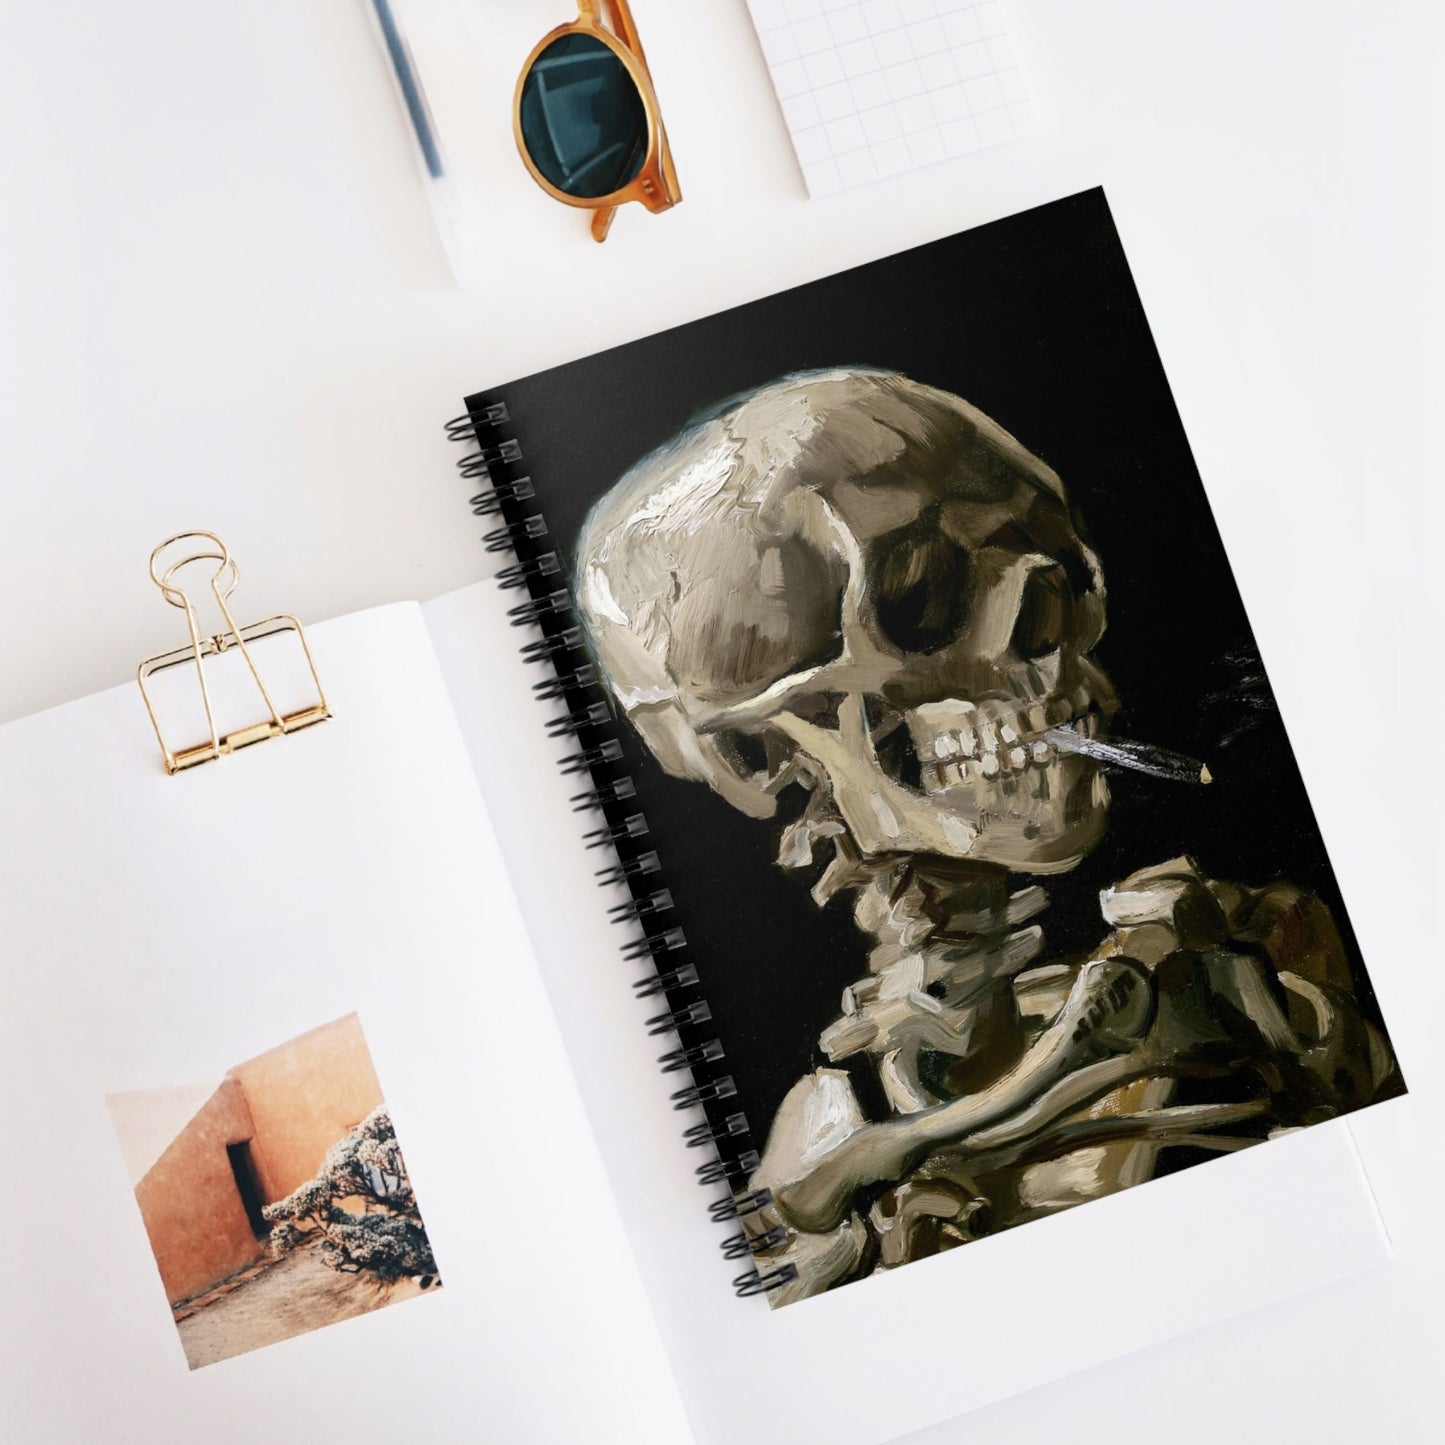 Famous Skull Spiral Notebook Displayed on Desk